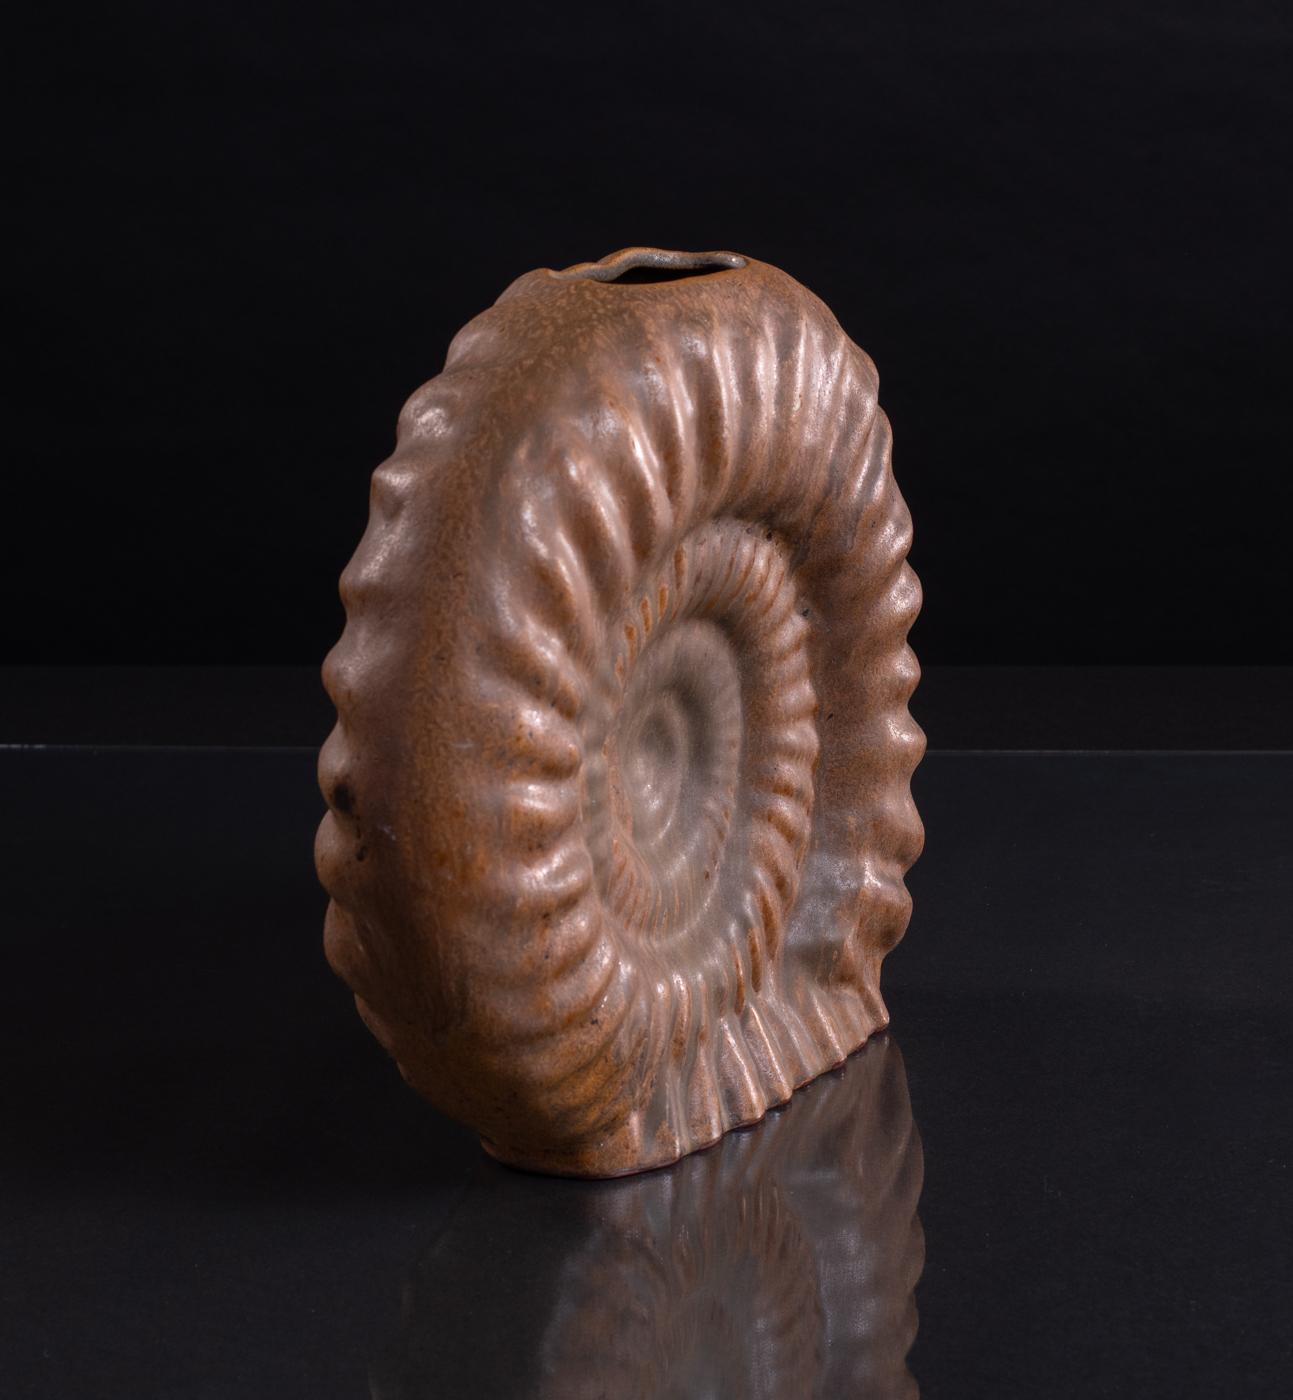 Handglasierte, ammonitenförmige Vase von Helmut Schäffenacker in einer tiefen Rostfarbe. Im Sockel nummeriert. Formular V-6. 

Helmut Schäffenacker gründete das Atelier Schäffenacker im Jahr 1948 in Westdeutschland. In seinem Studio arbeitete er mit